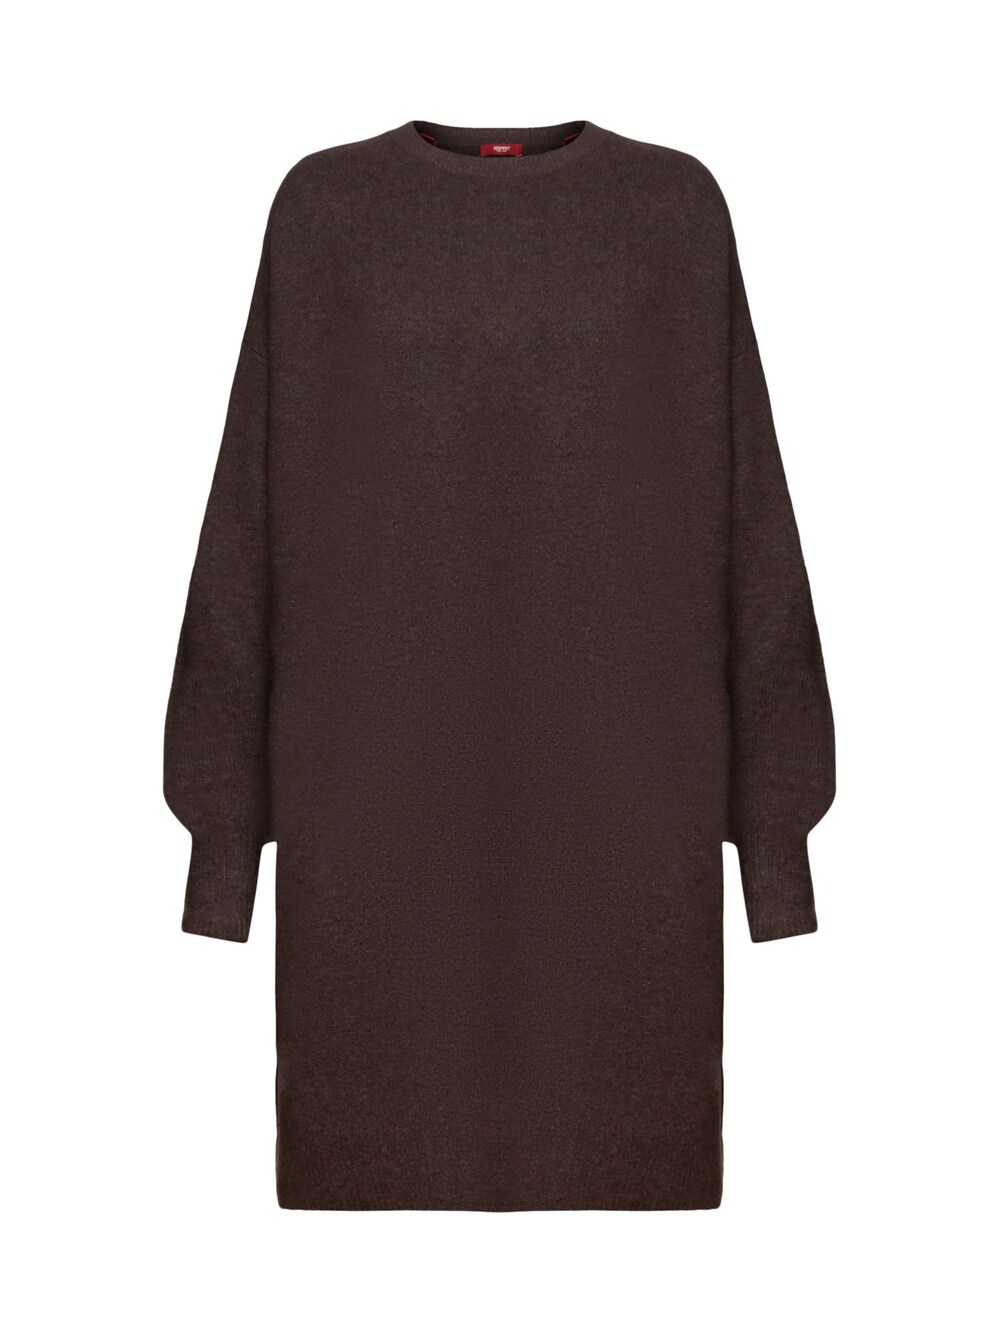 Вязанное платье Esprit, темно коричневый вязанное платье esprit карамель